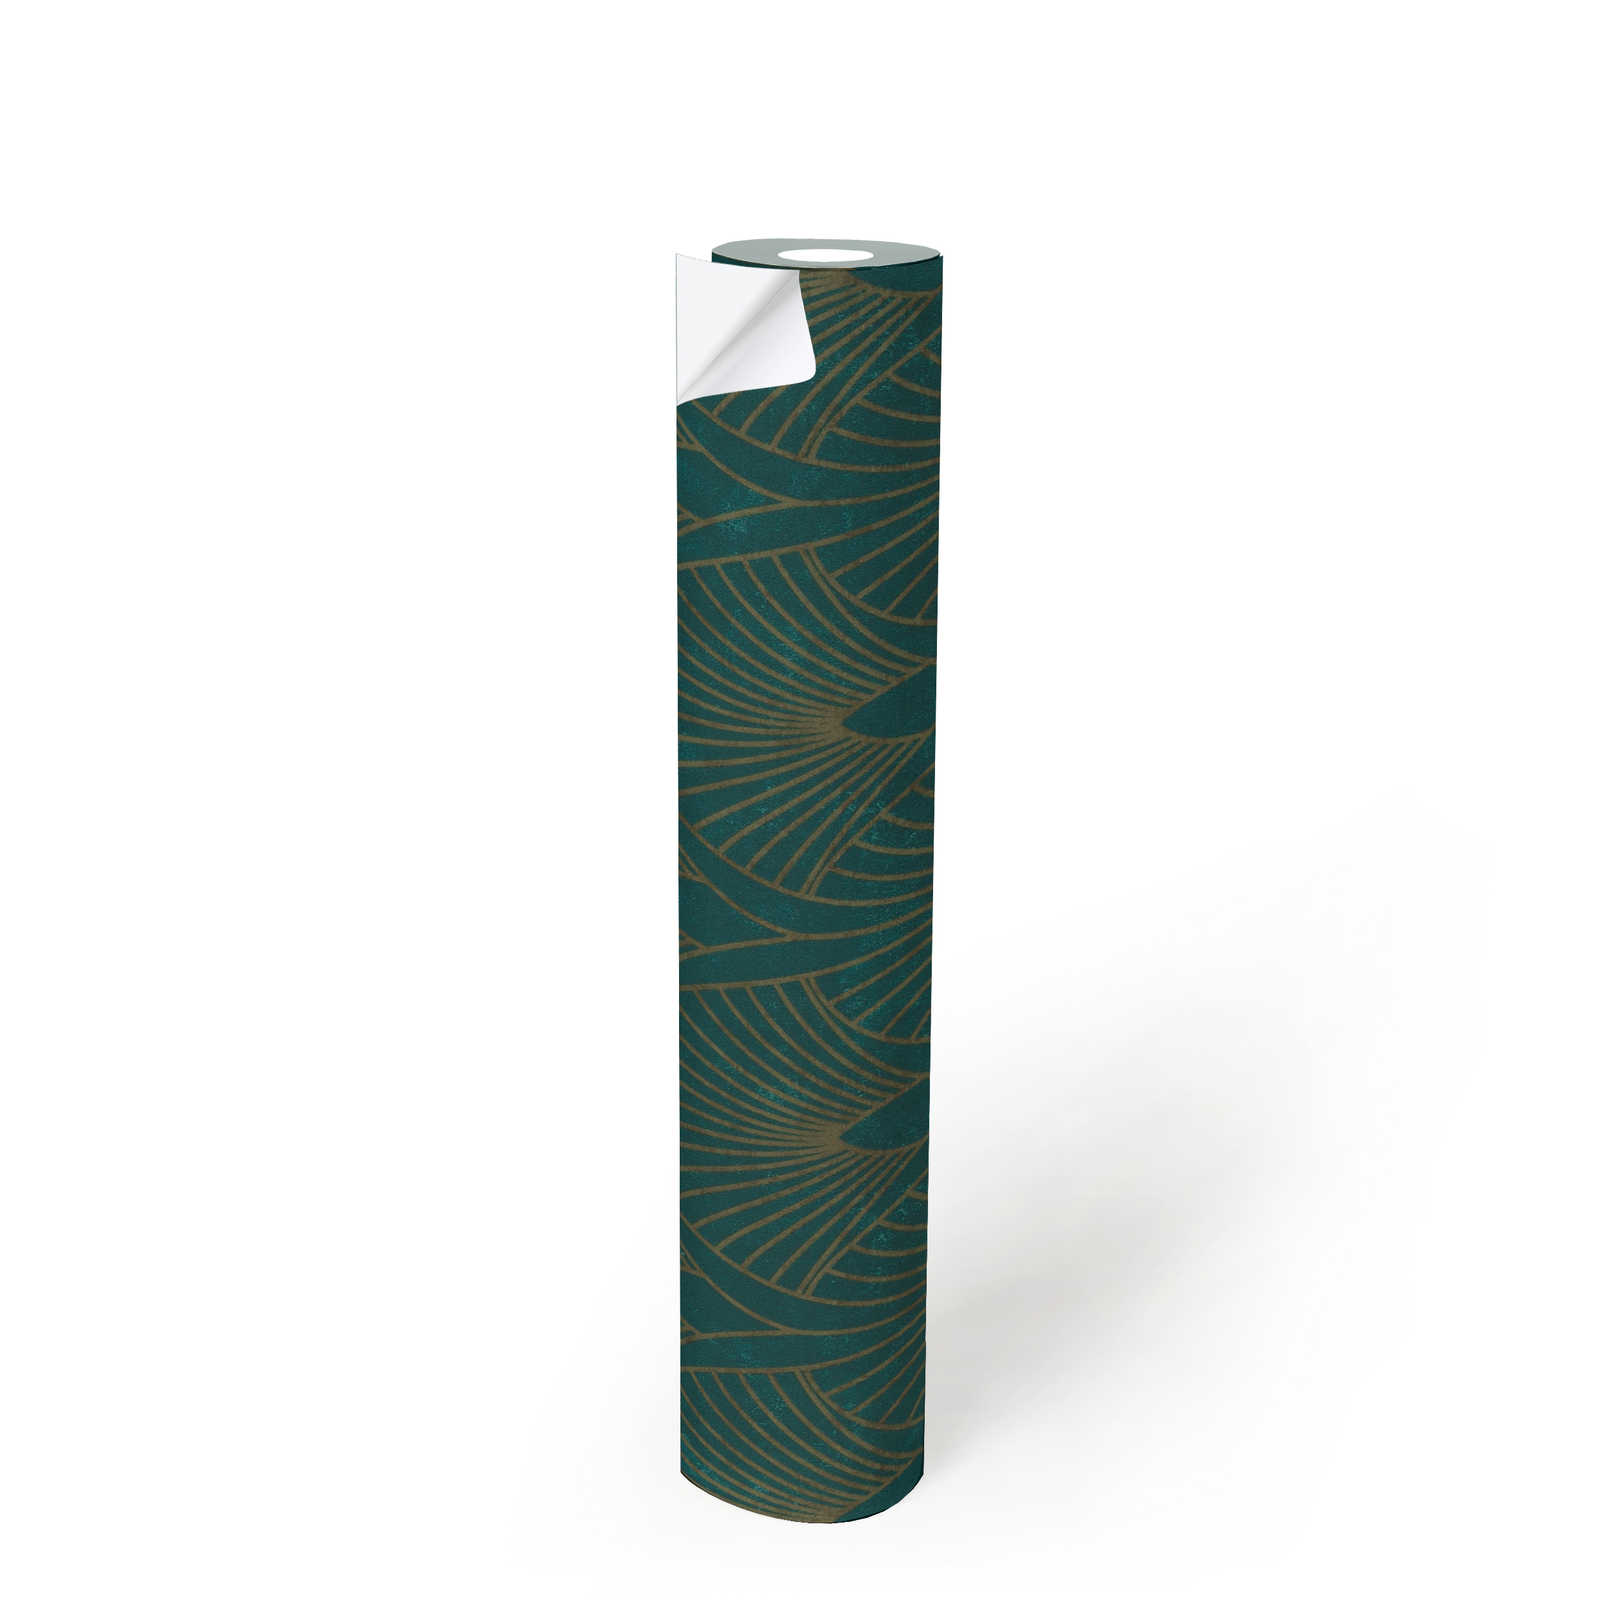             Zelfklevend behangpapier | Art Deco design met metallic effect - groen, metallic
        